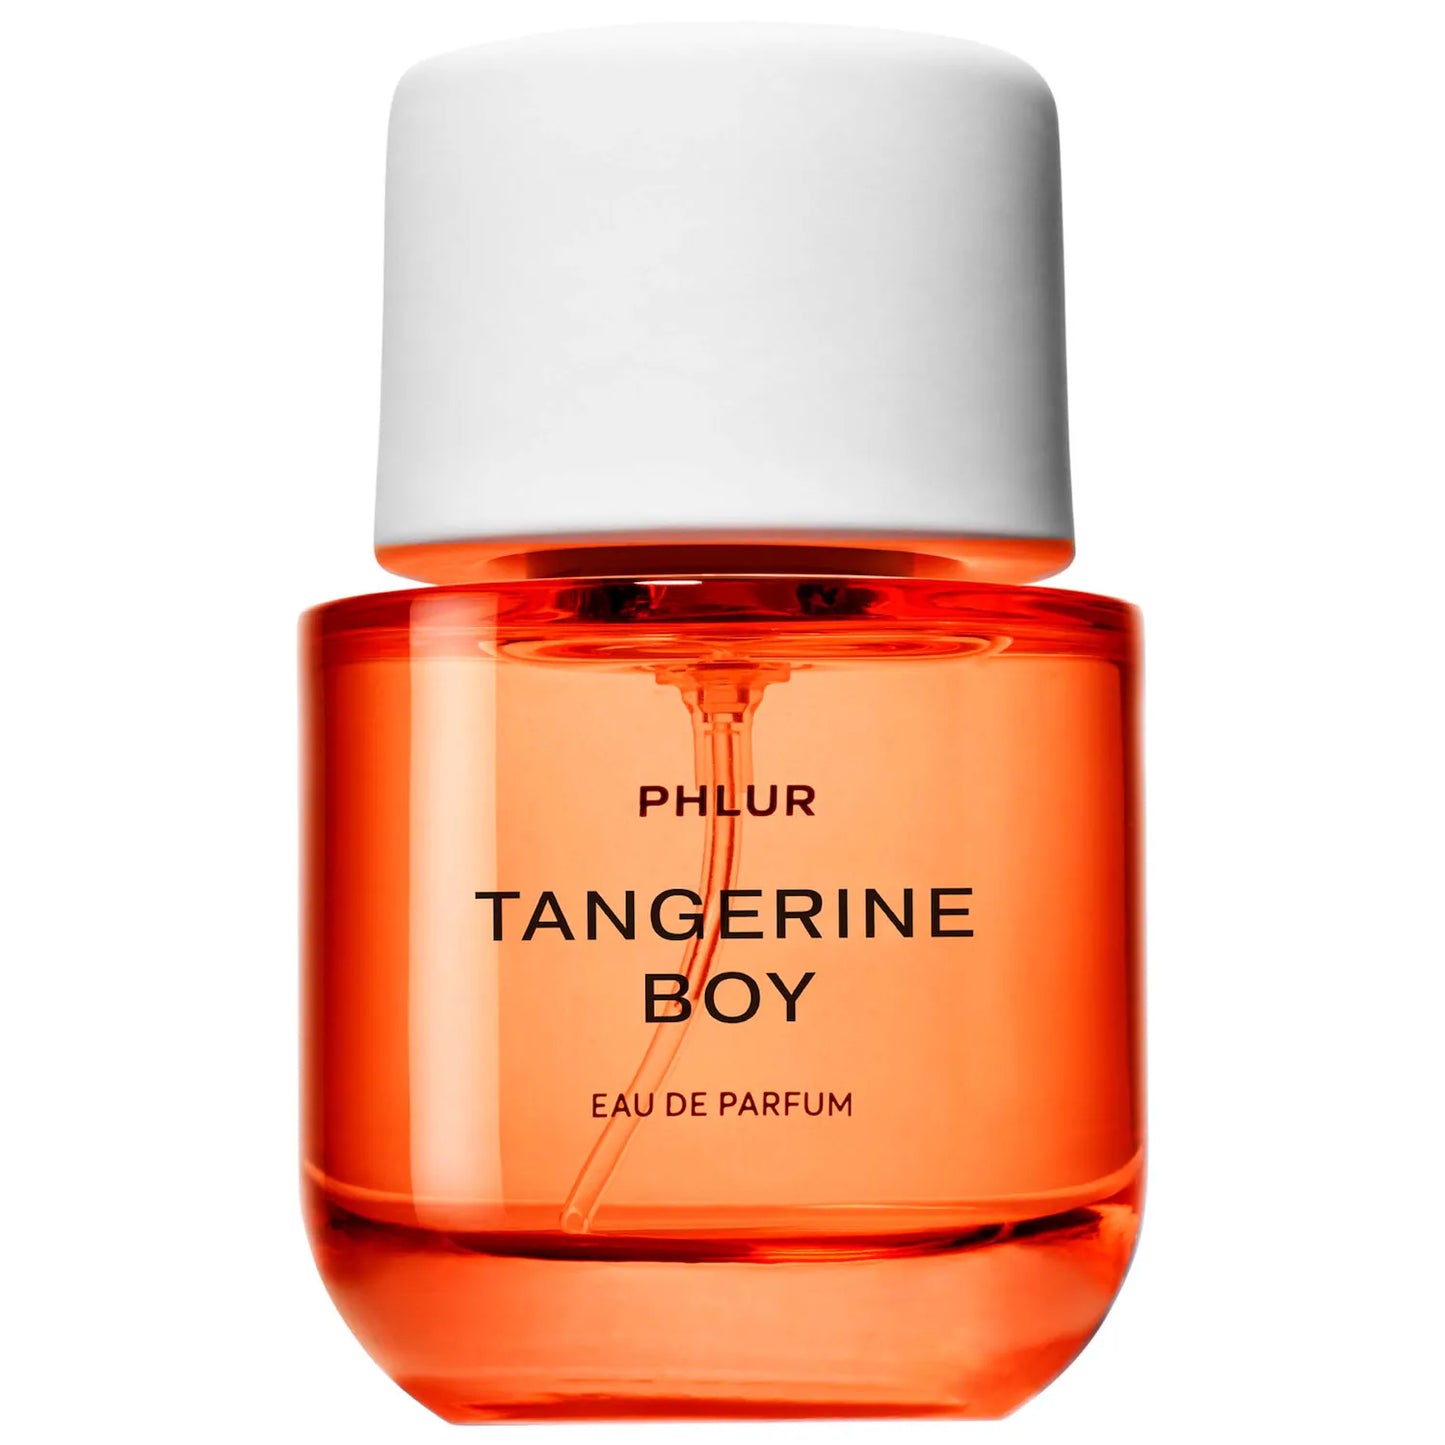 PHLUR Tangerine Boy Eau de Parfum *pre-order*